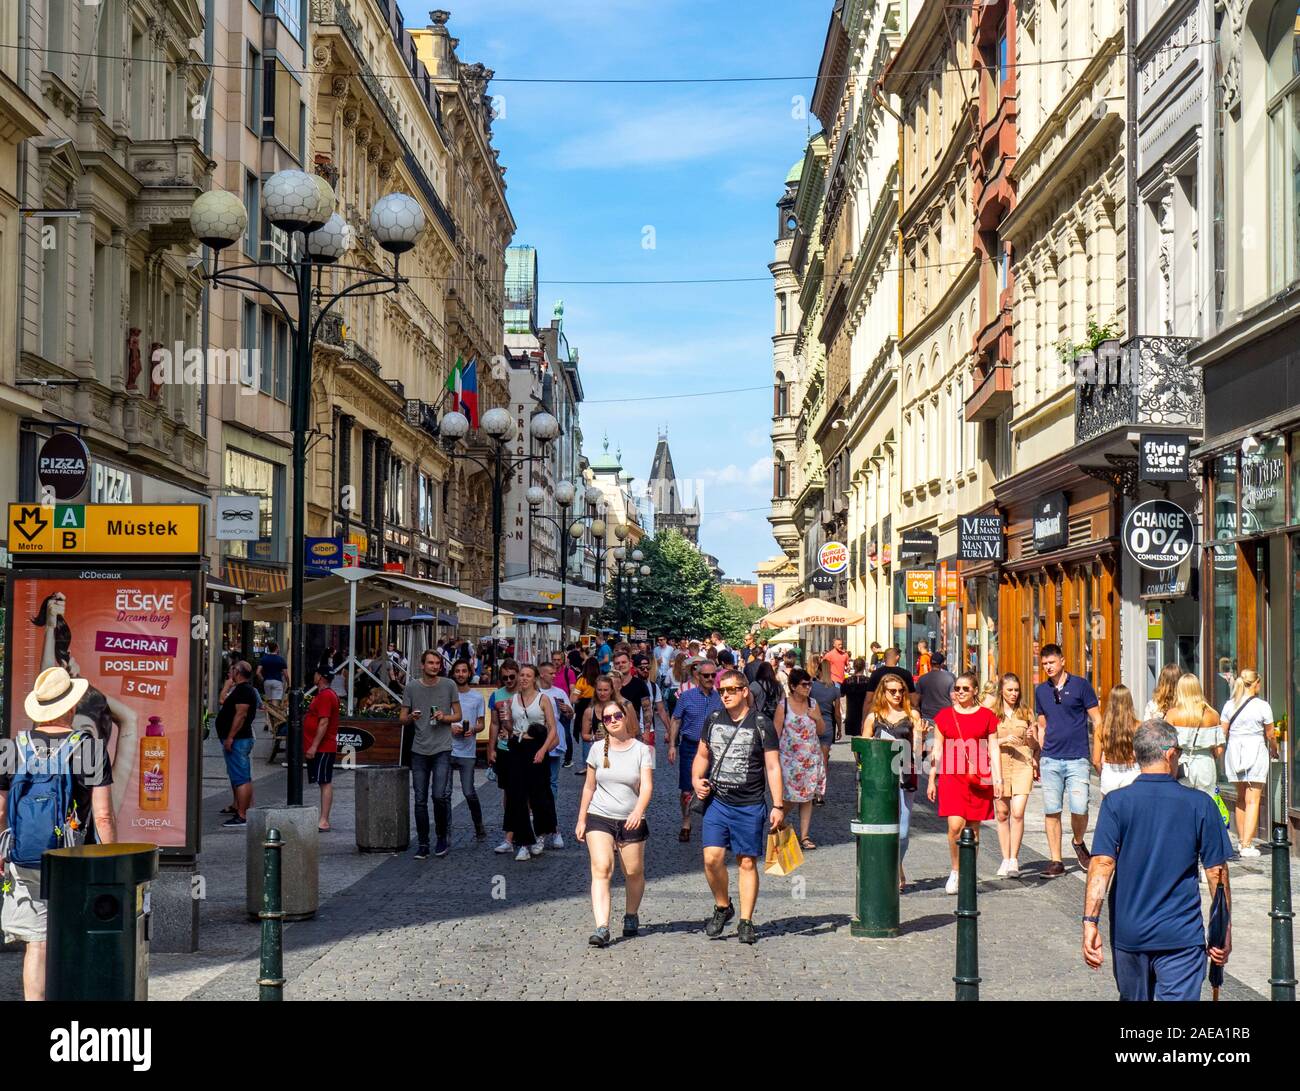 Massen von Touristen, die auf Kopfsteinpflaster 28. října Straße mit touristischen Geschäften und Cafés Altstadt Prag Tschechische Republik gesäumt. Stockfoto